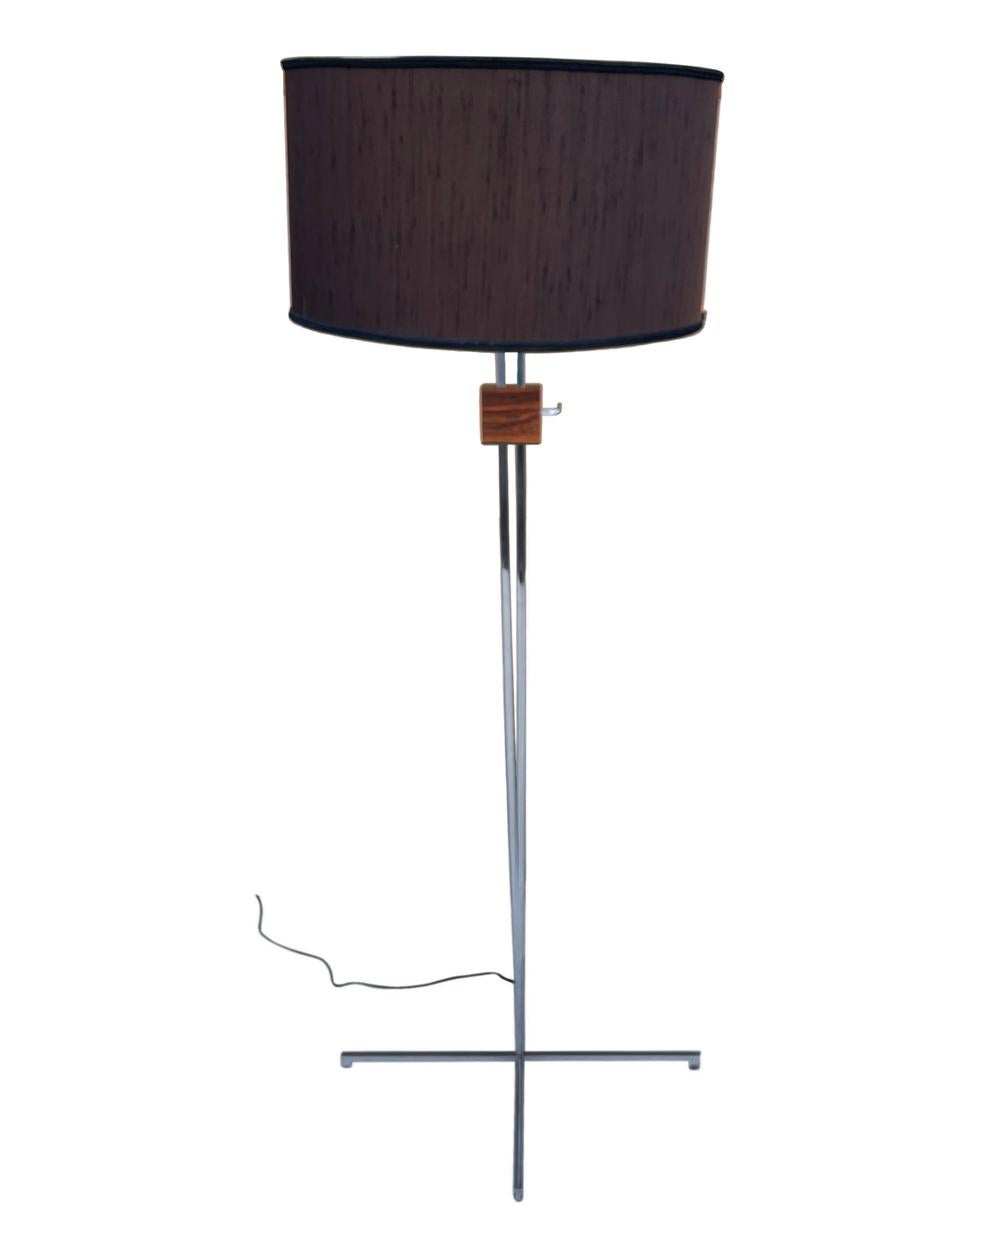 Eine minimalistische skandinavische Stehleuchte. Die Lampe verfügt über einen höhenverstellbaren Sockel mit dünnem Chromrahmen und einem Rosenholz-Akzent. Der 18-Zoll-Trommel-Lampenschirm ist nicht enthalten. 